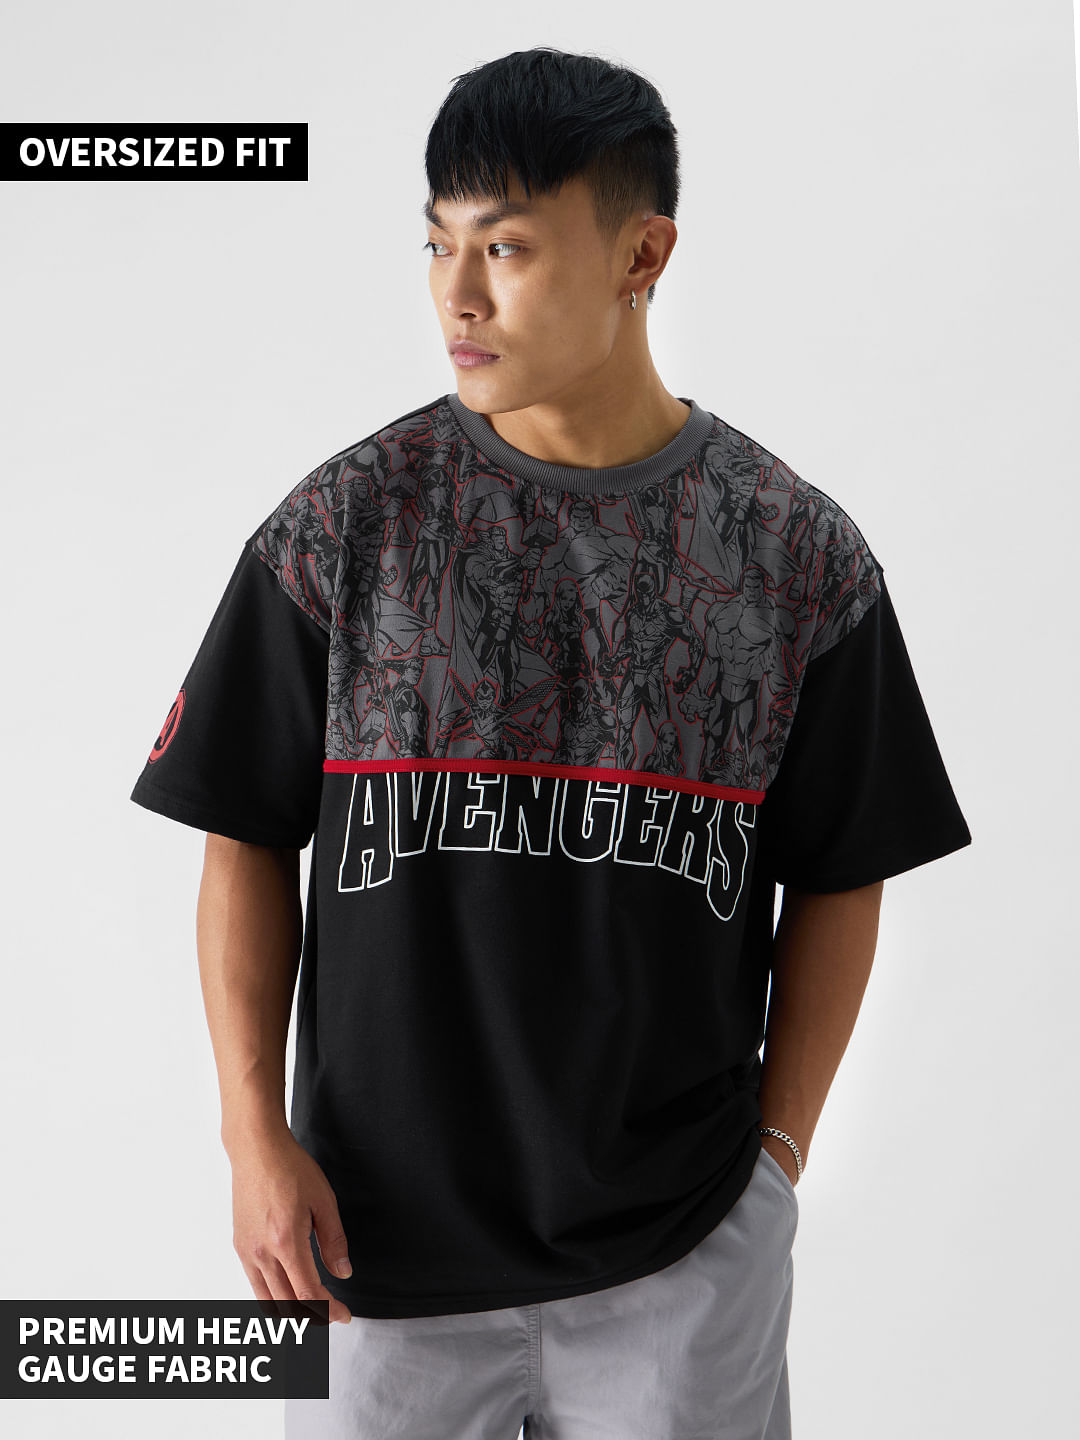 Buy Marvel: Avengers Assemble Oversized T-Shirts Online